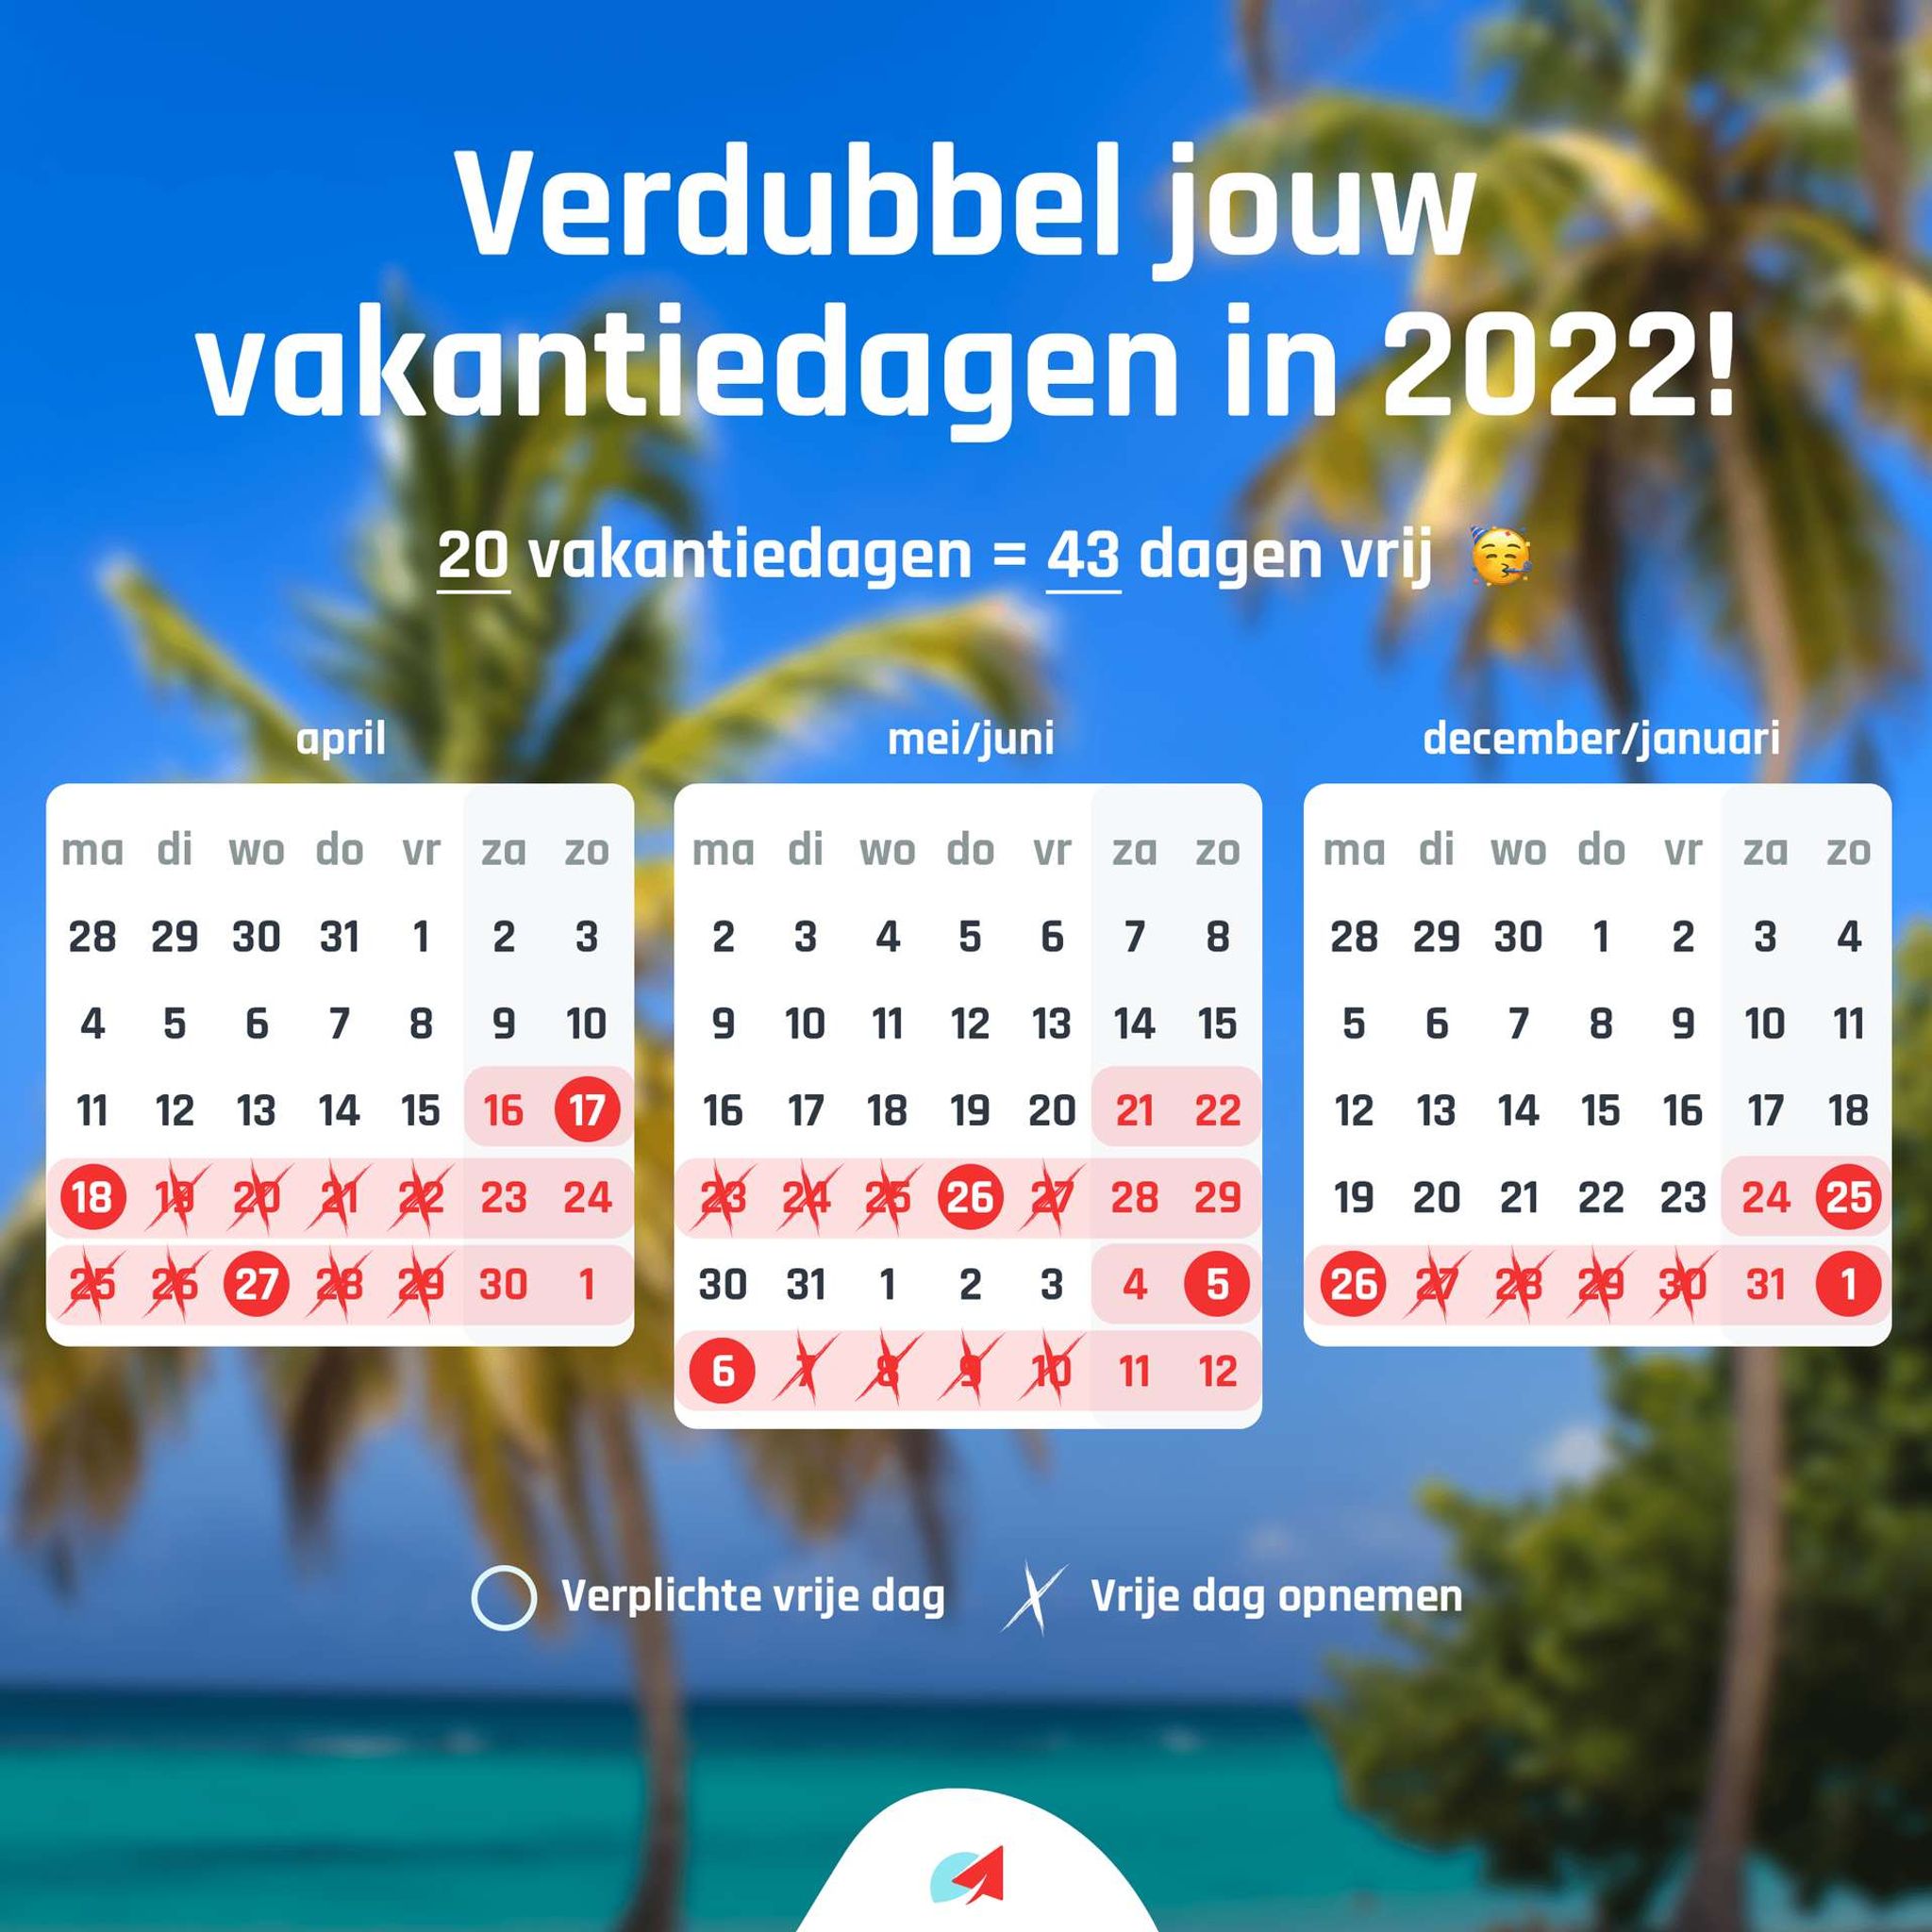 Vakantiedagen verdubbelen 2022: visueel uitgelegd